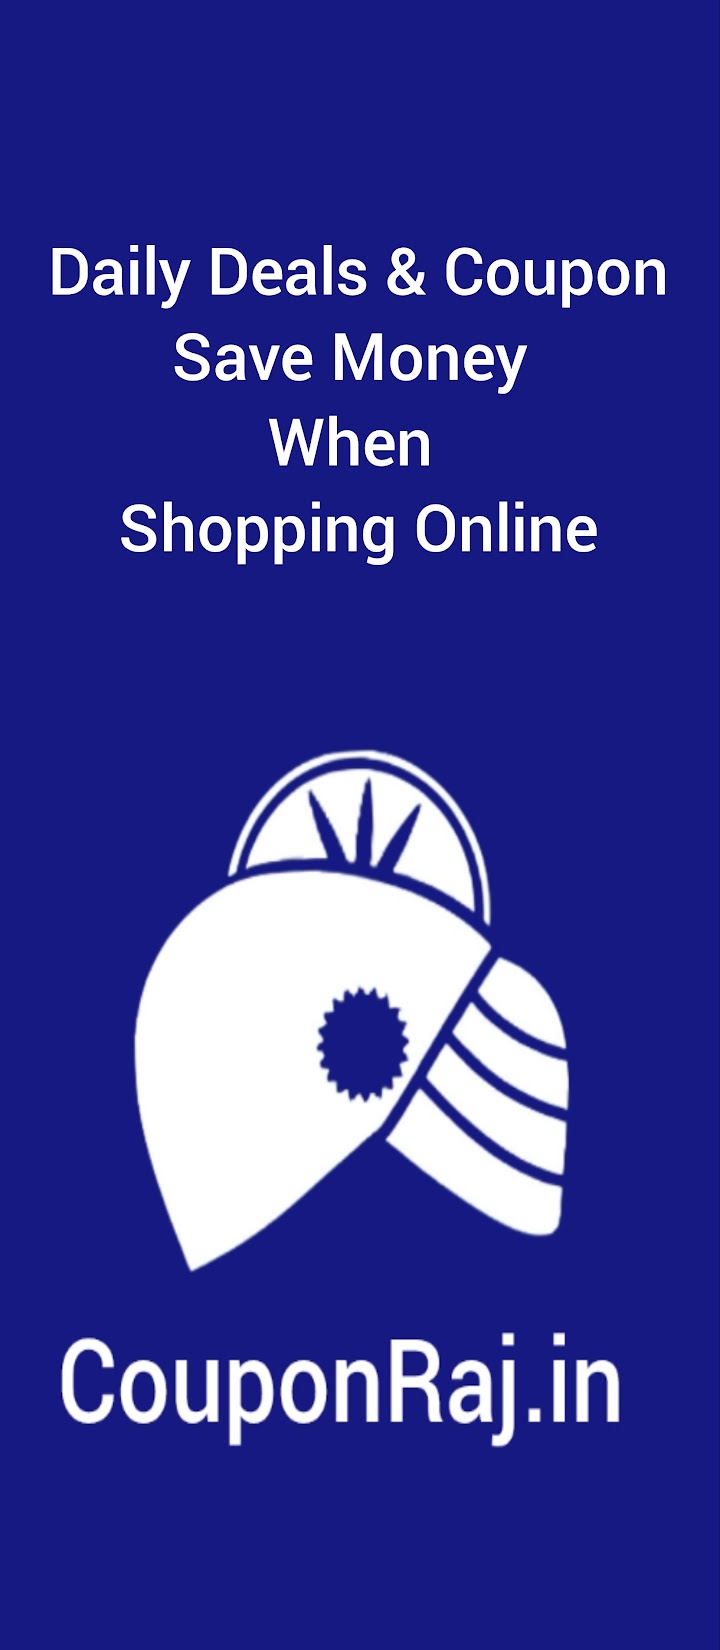 DailyDeals Online Shopping App